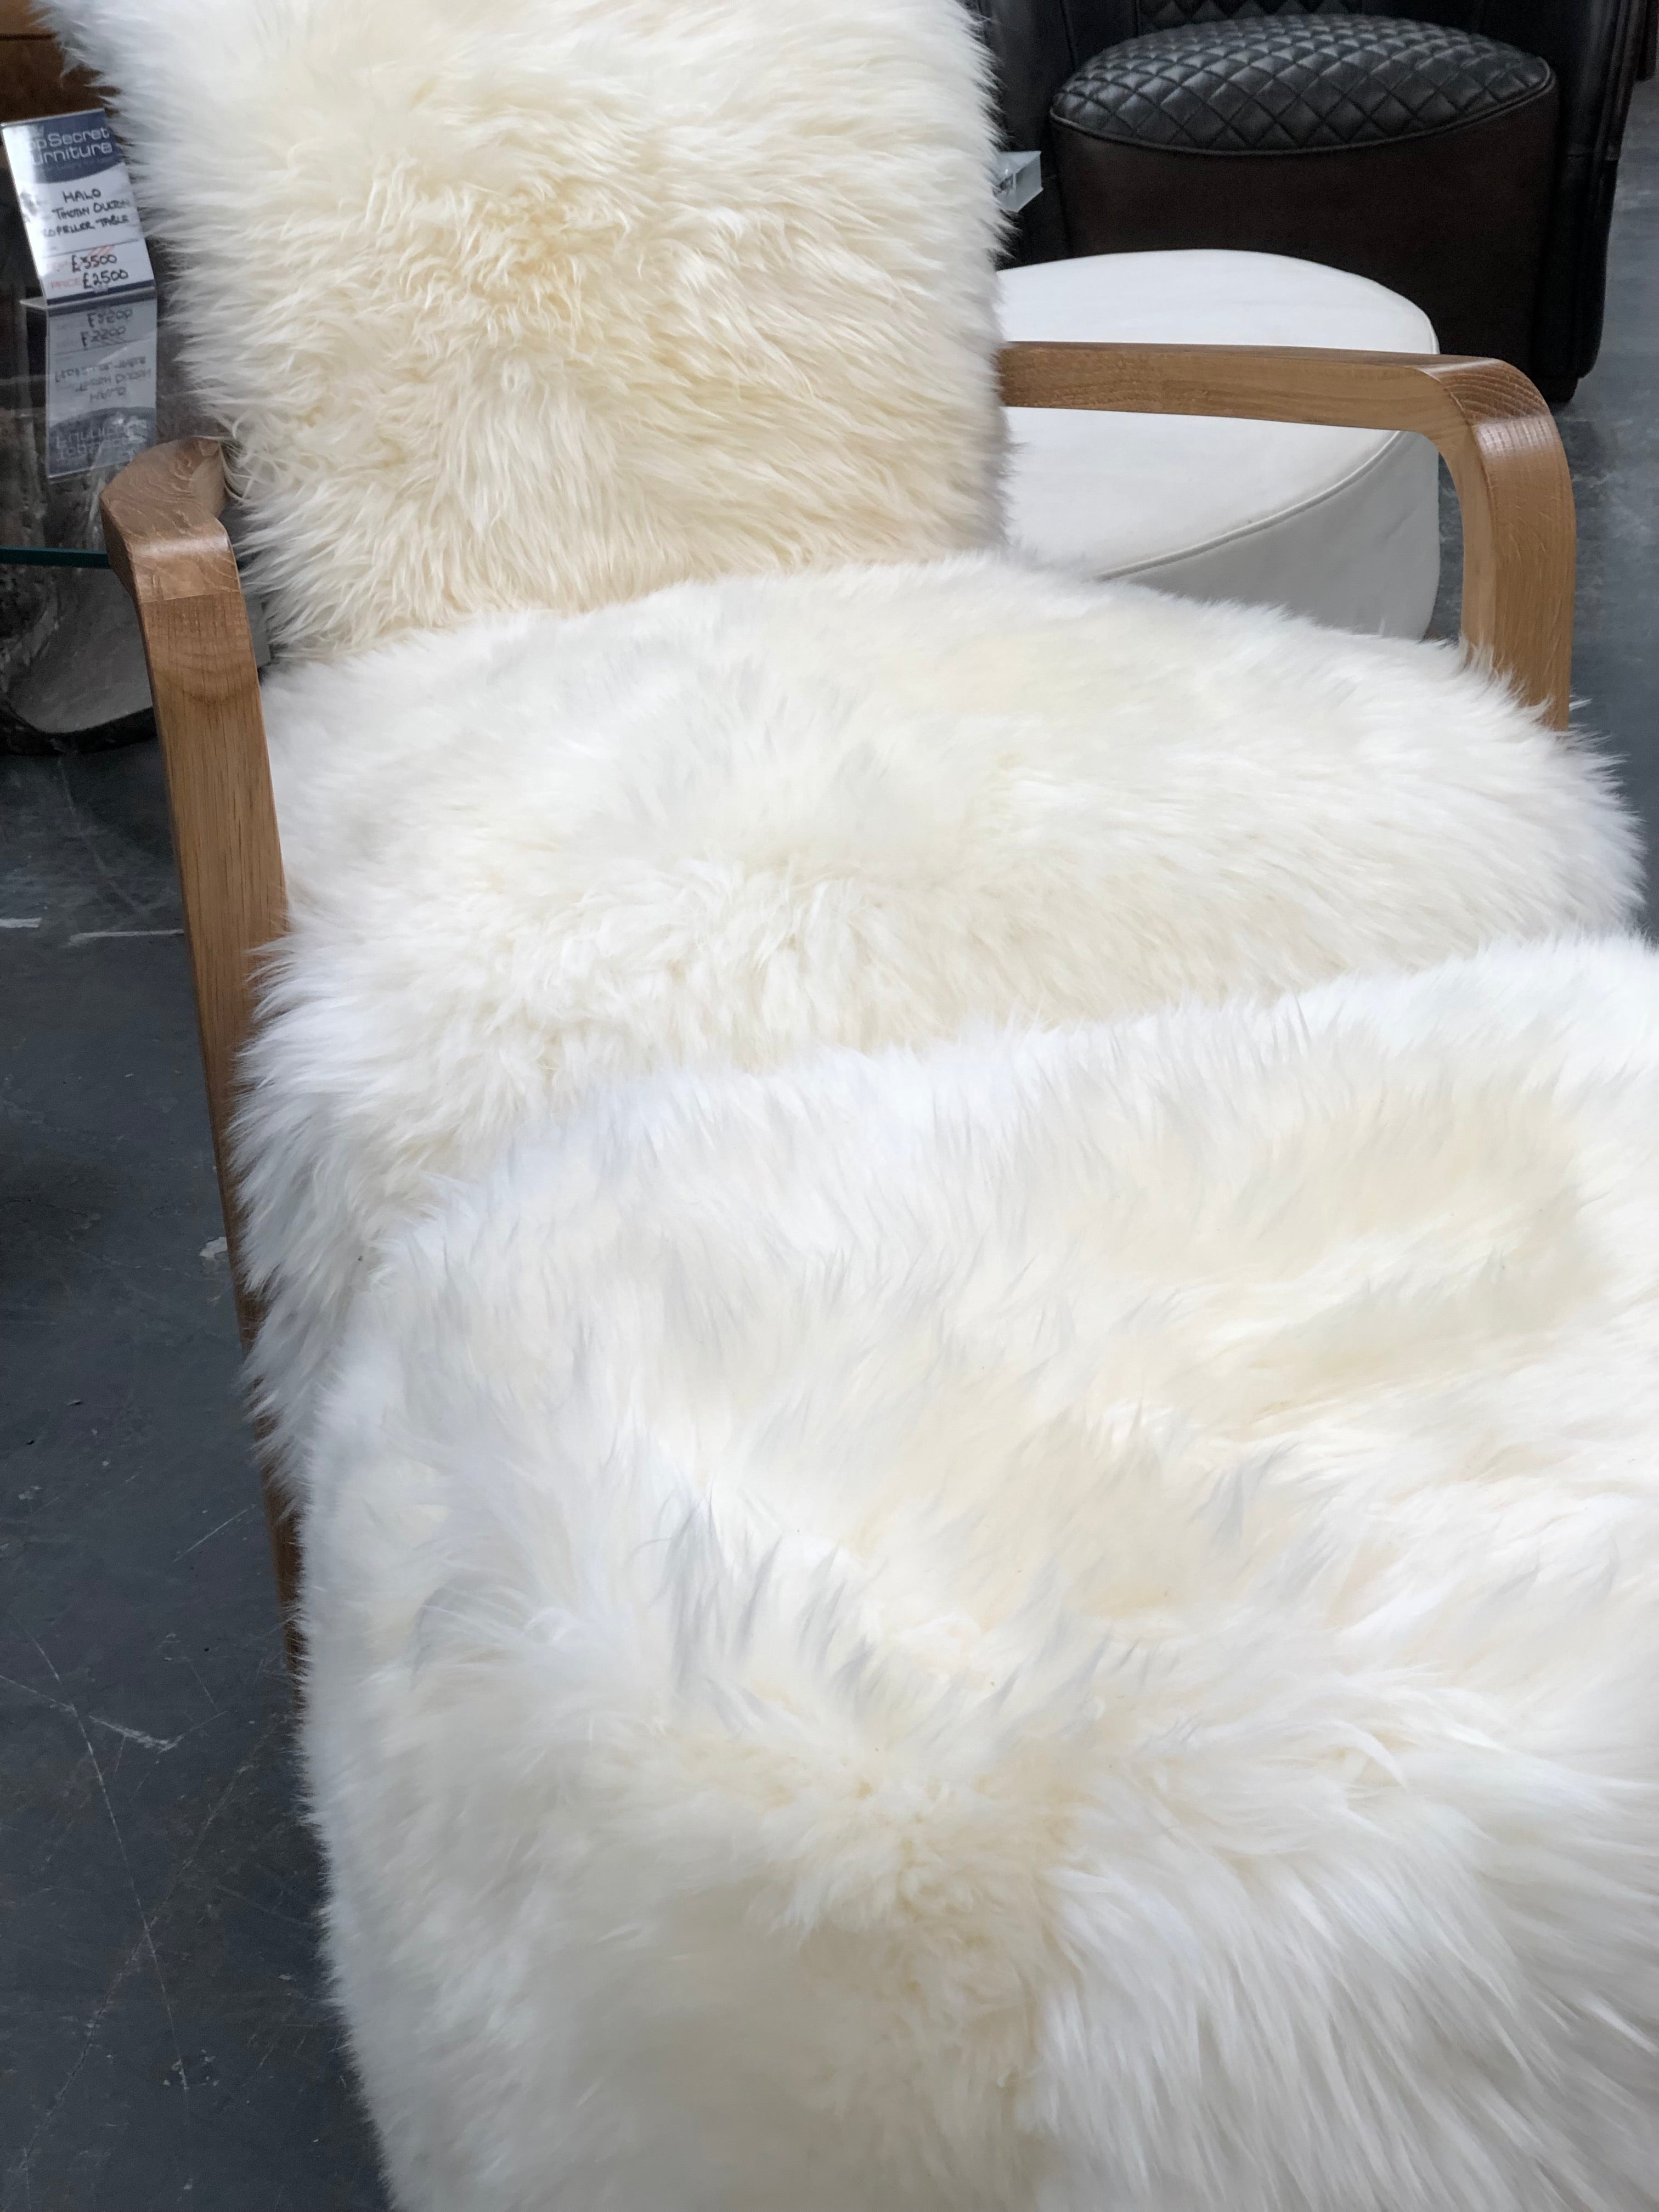 Baa Baa armchair and footstool